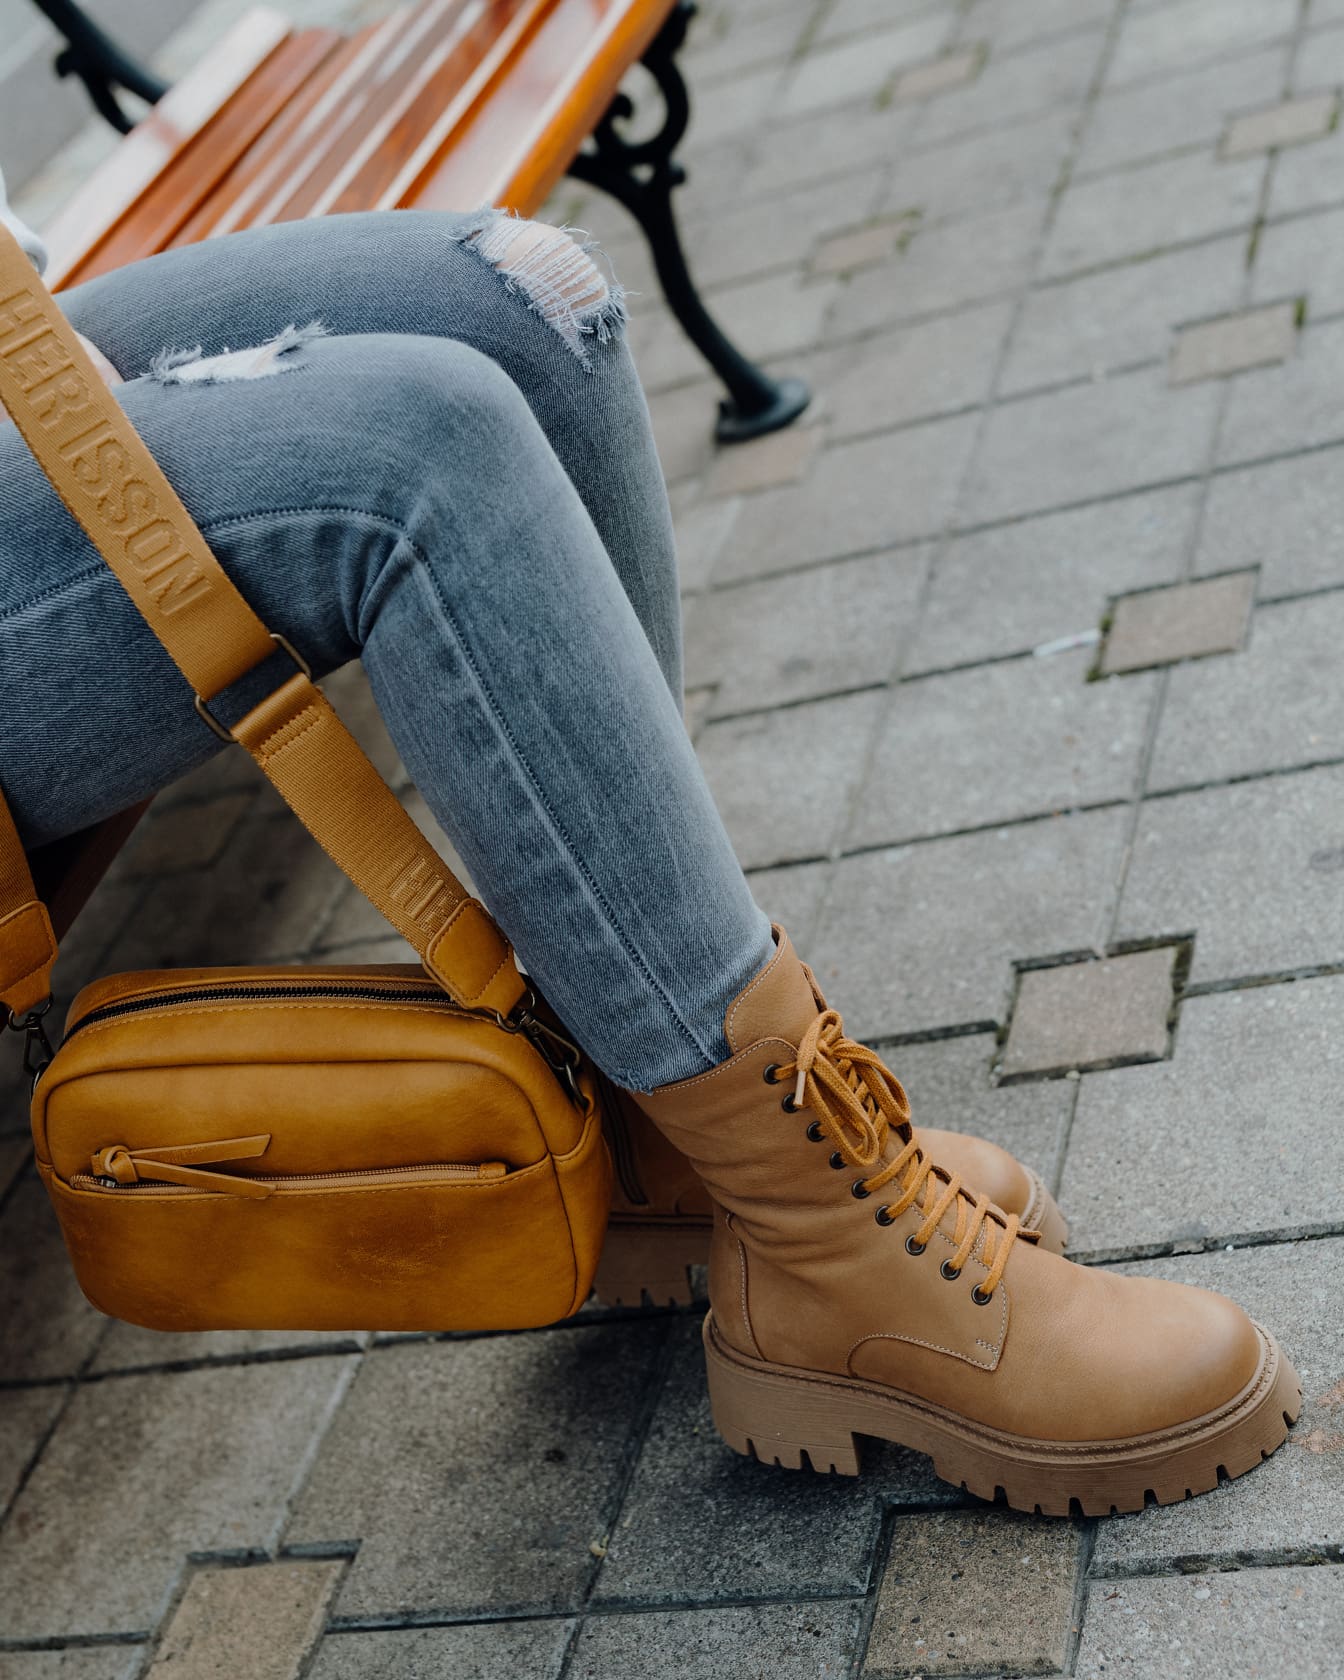 Personne assise sur un banc en jean déchiré moderne avec un sac à main jaunâtre et des bottes